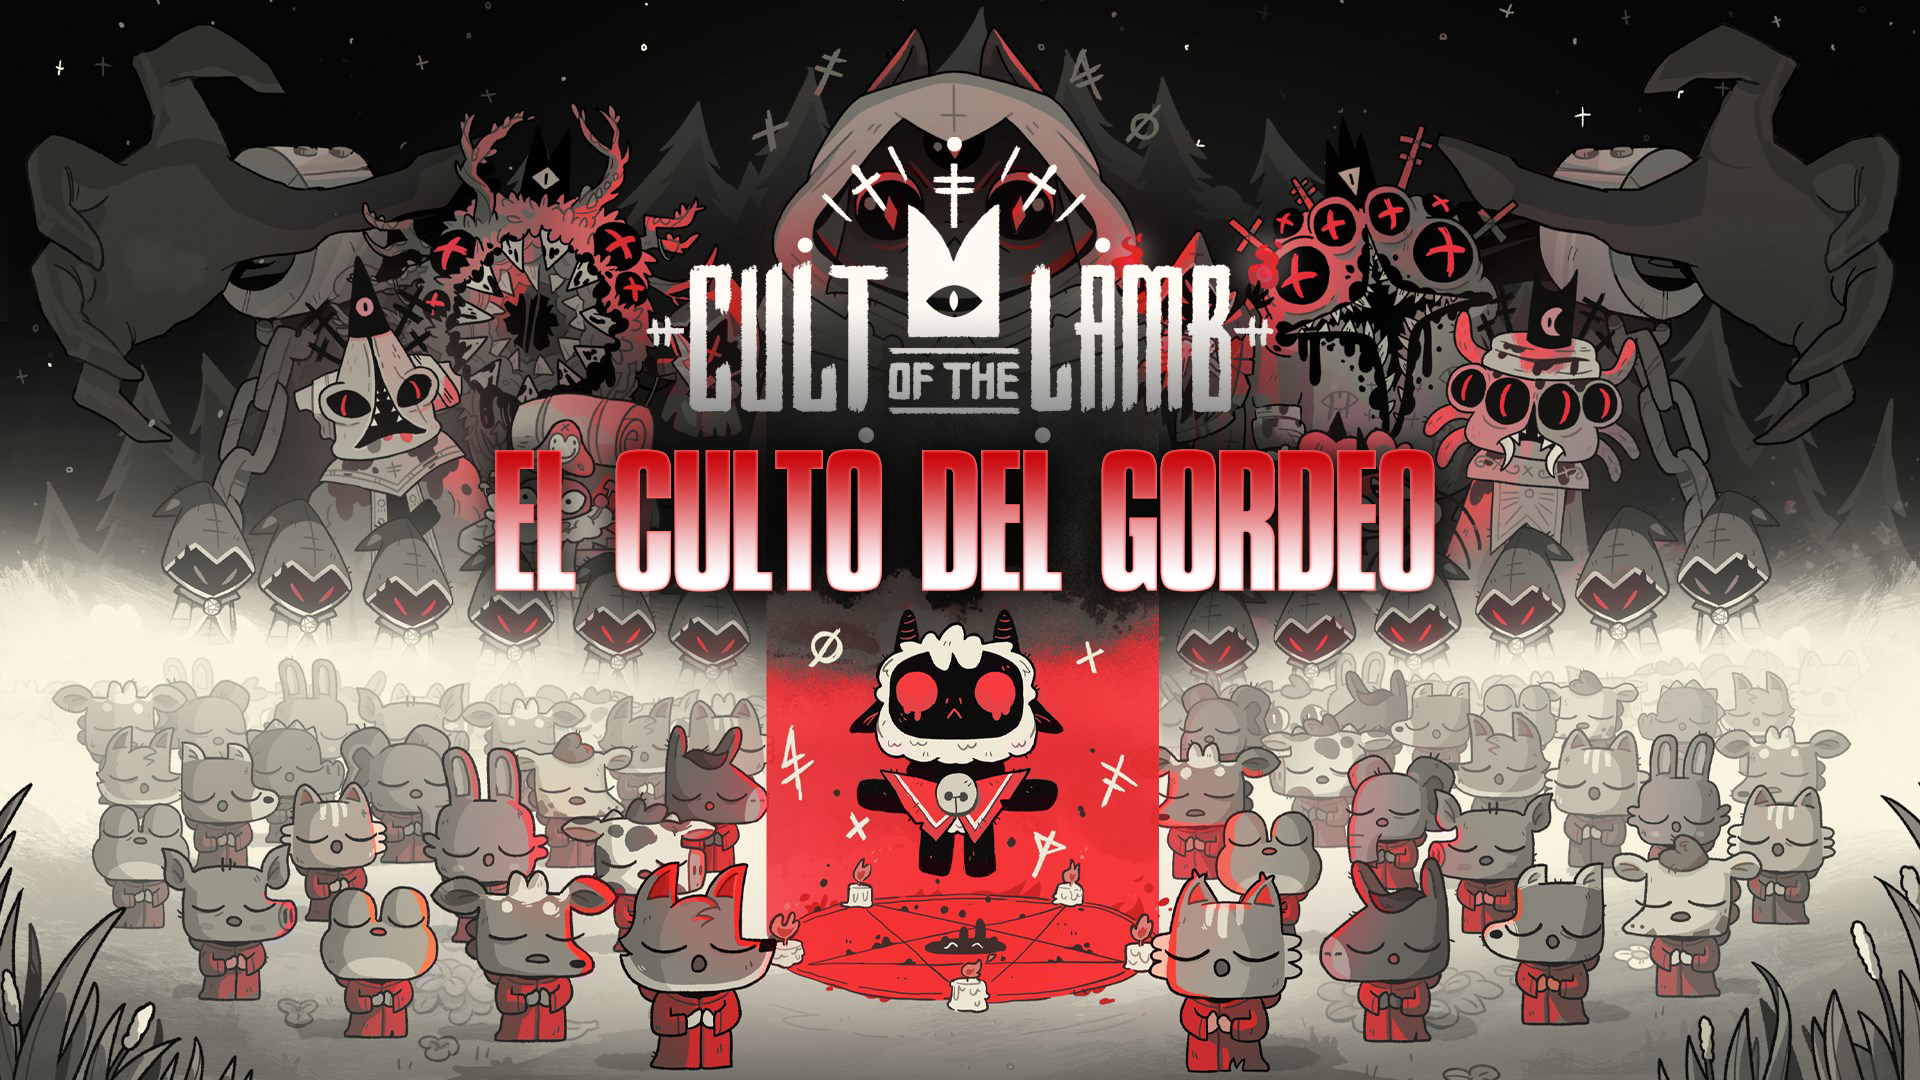 Stream Cult of the Lamb – El Culto del Gordeo